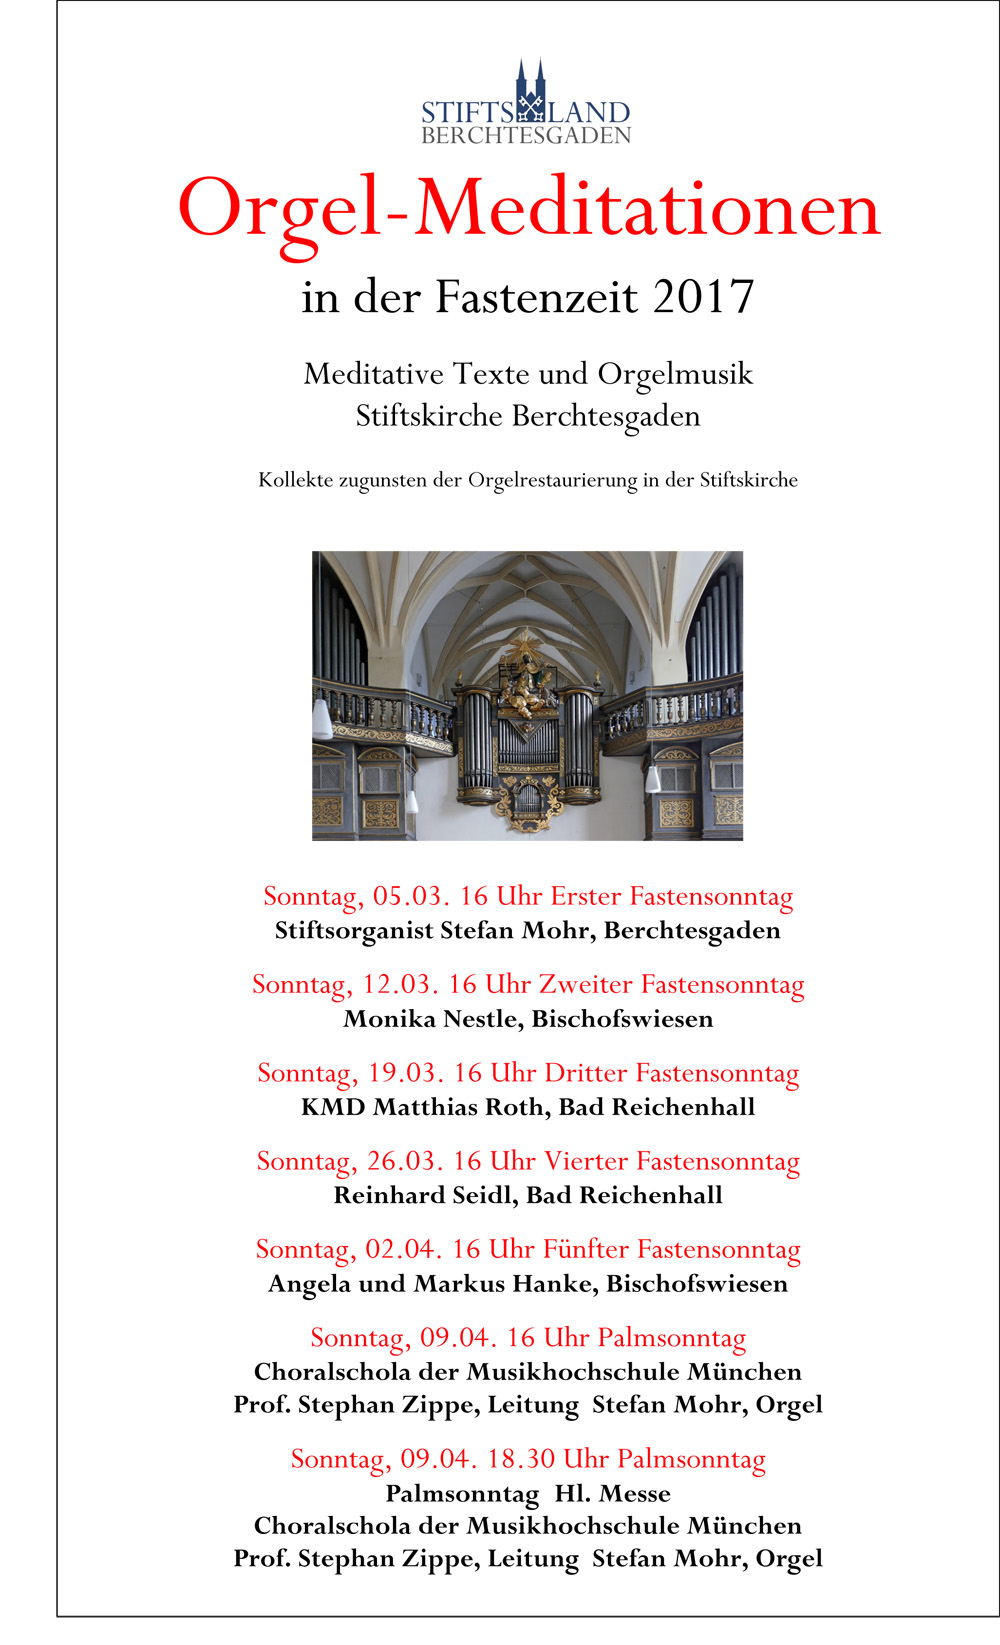 Orgelmeditation Fastenzeit 2017